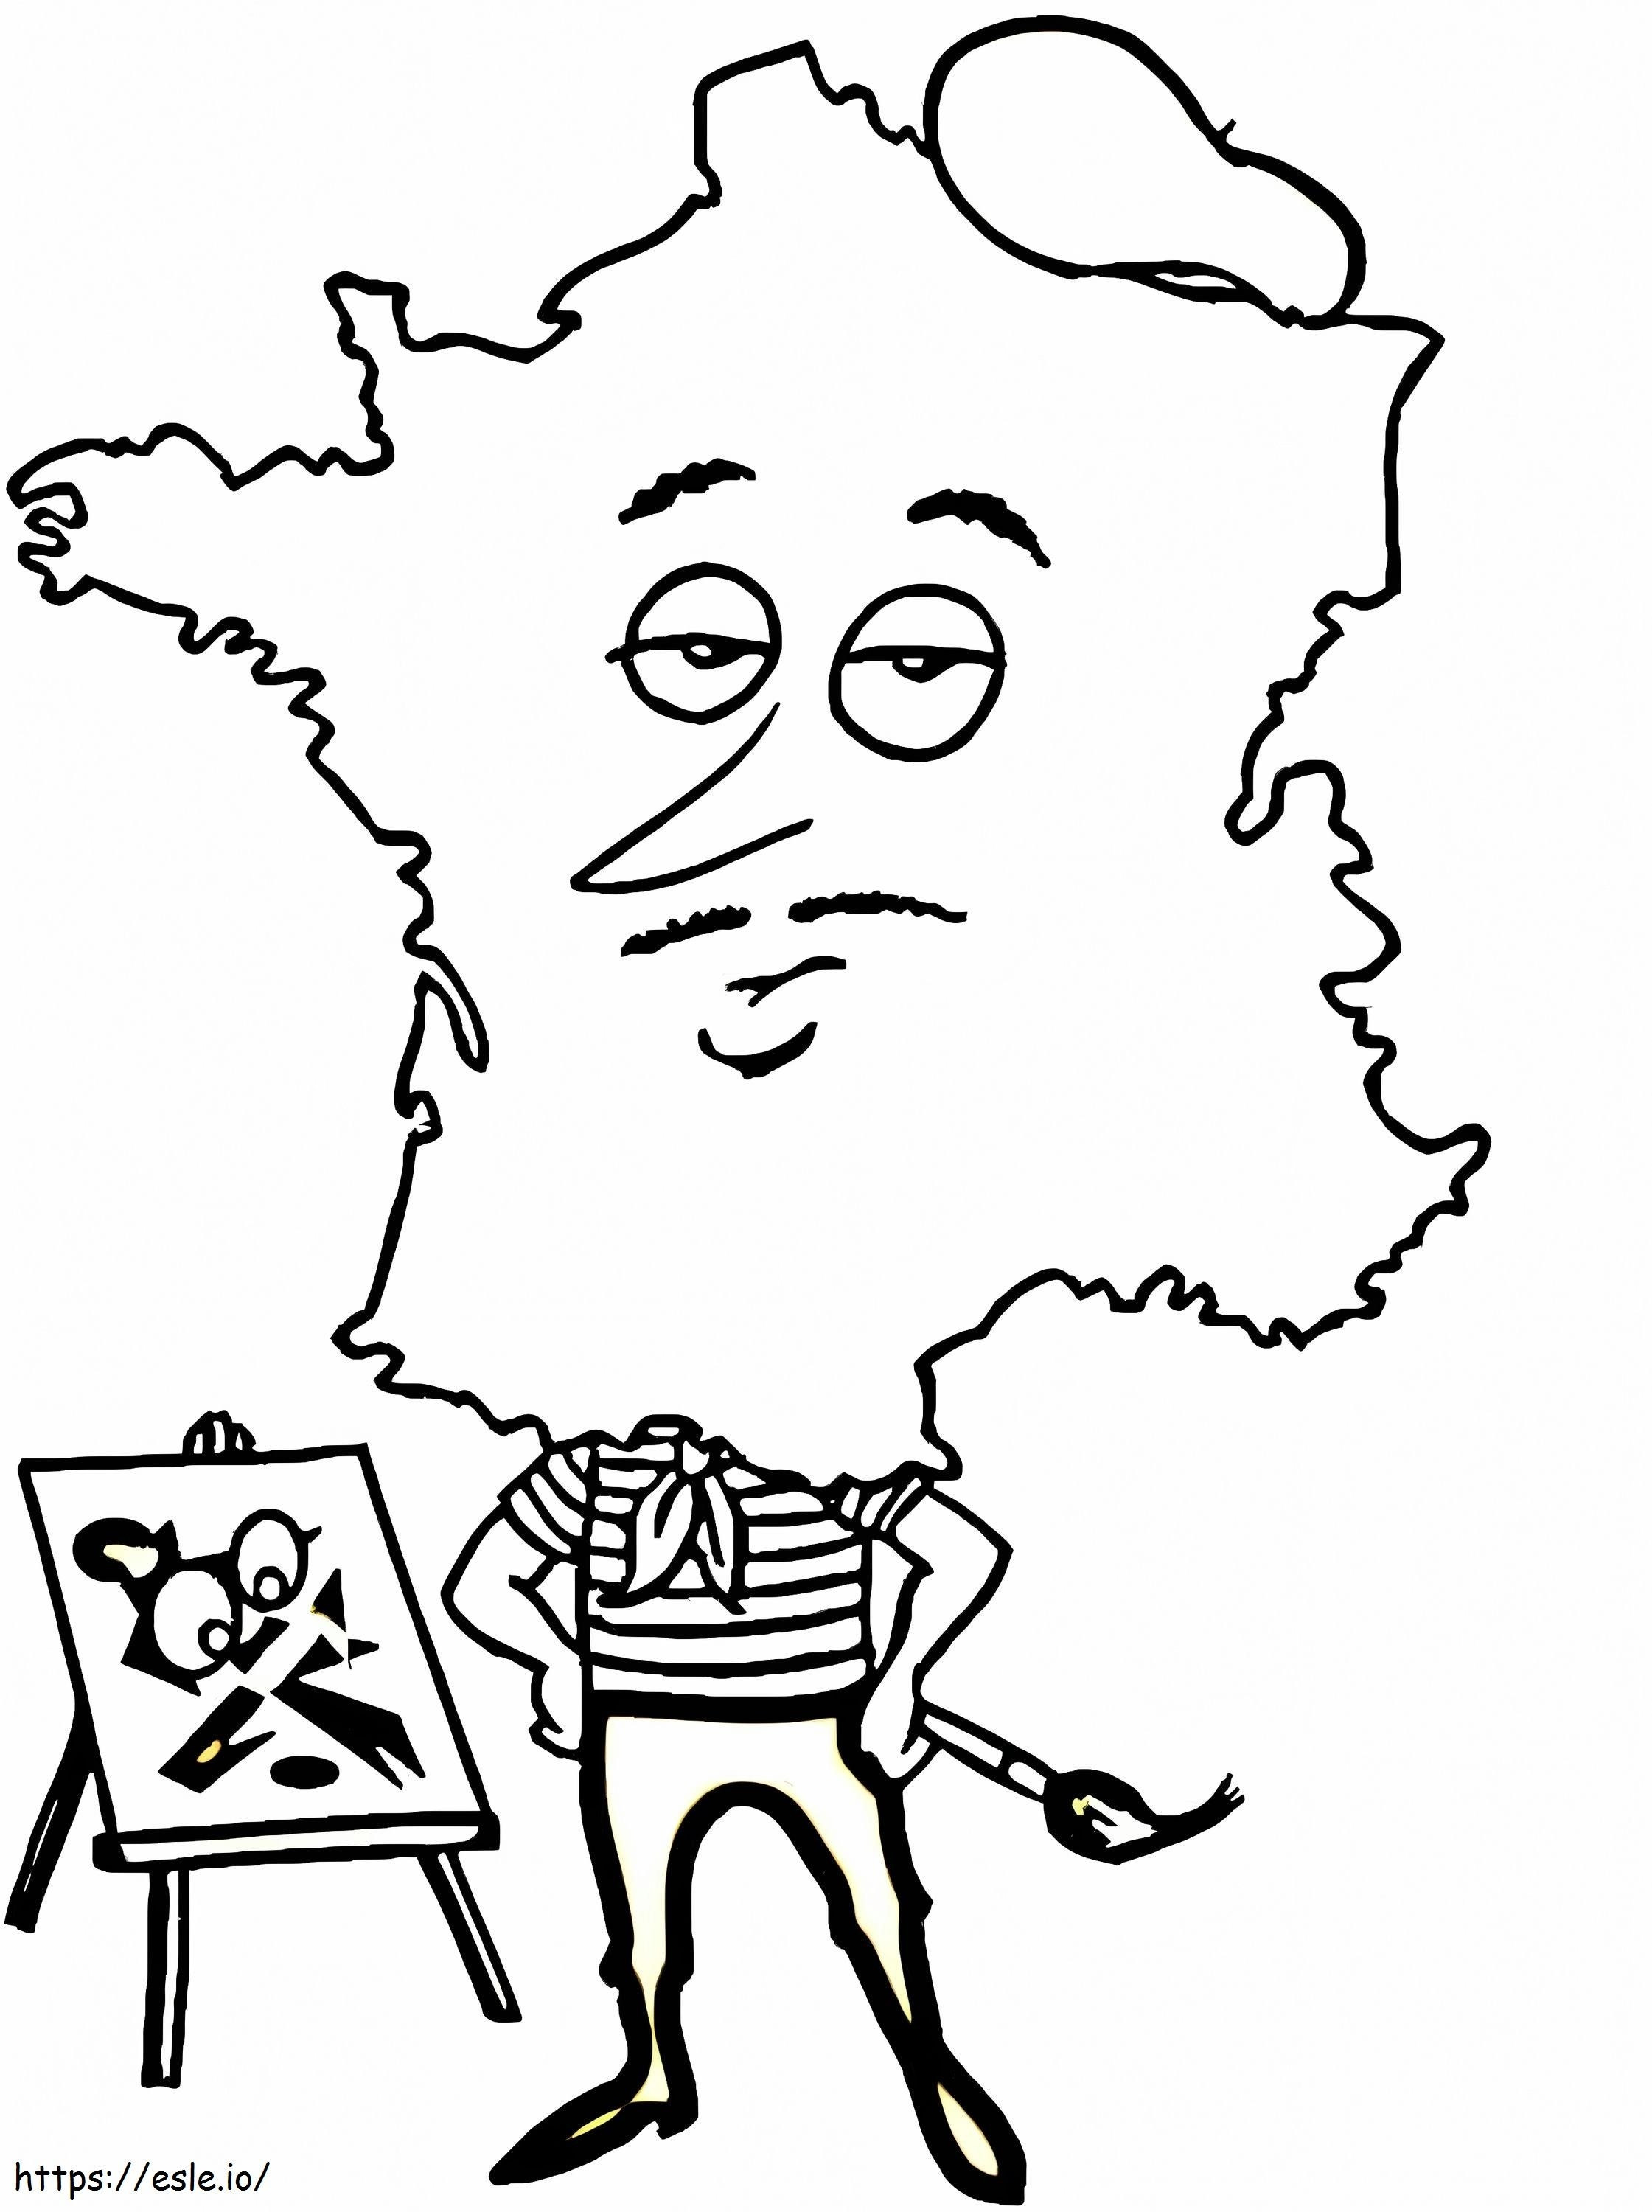 Mapa do pintor da França para colorir